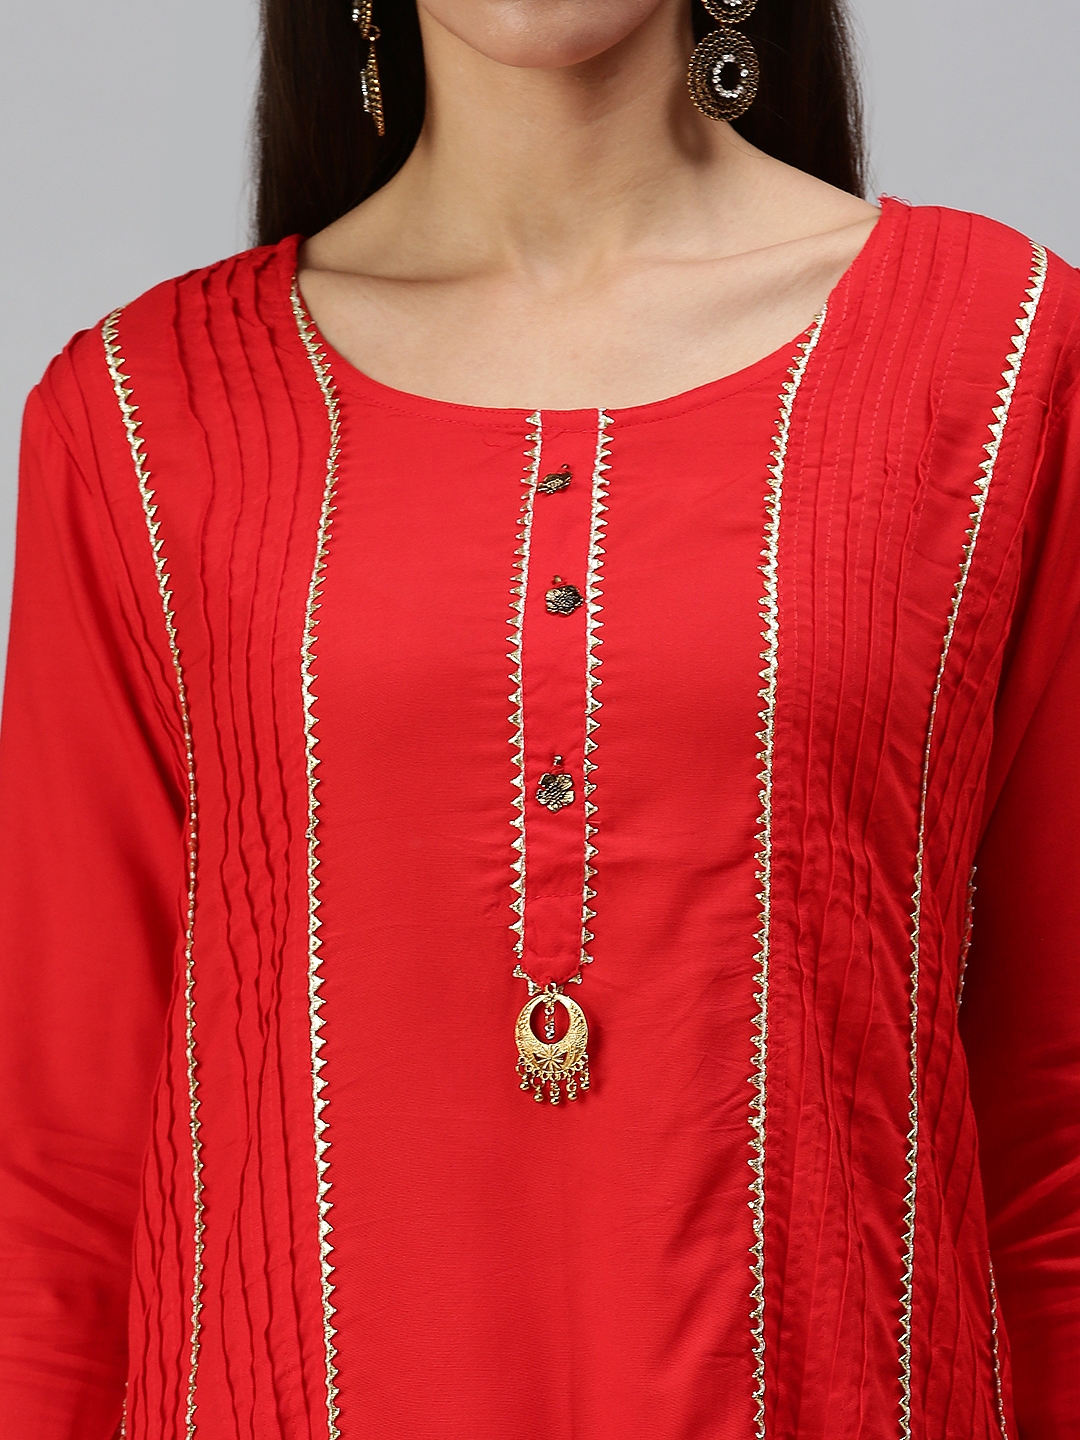 Women's Red Cotton Blend Solid Regular Kurta Sets